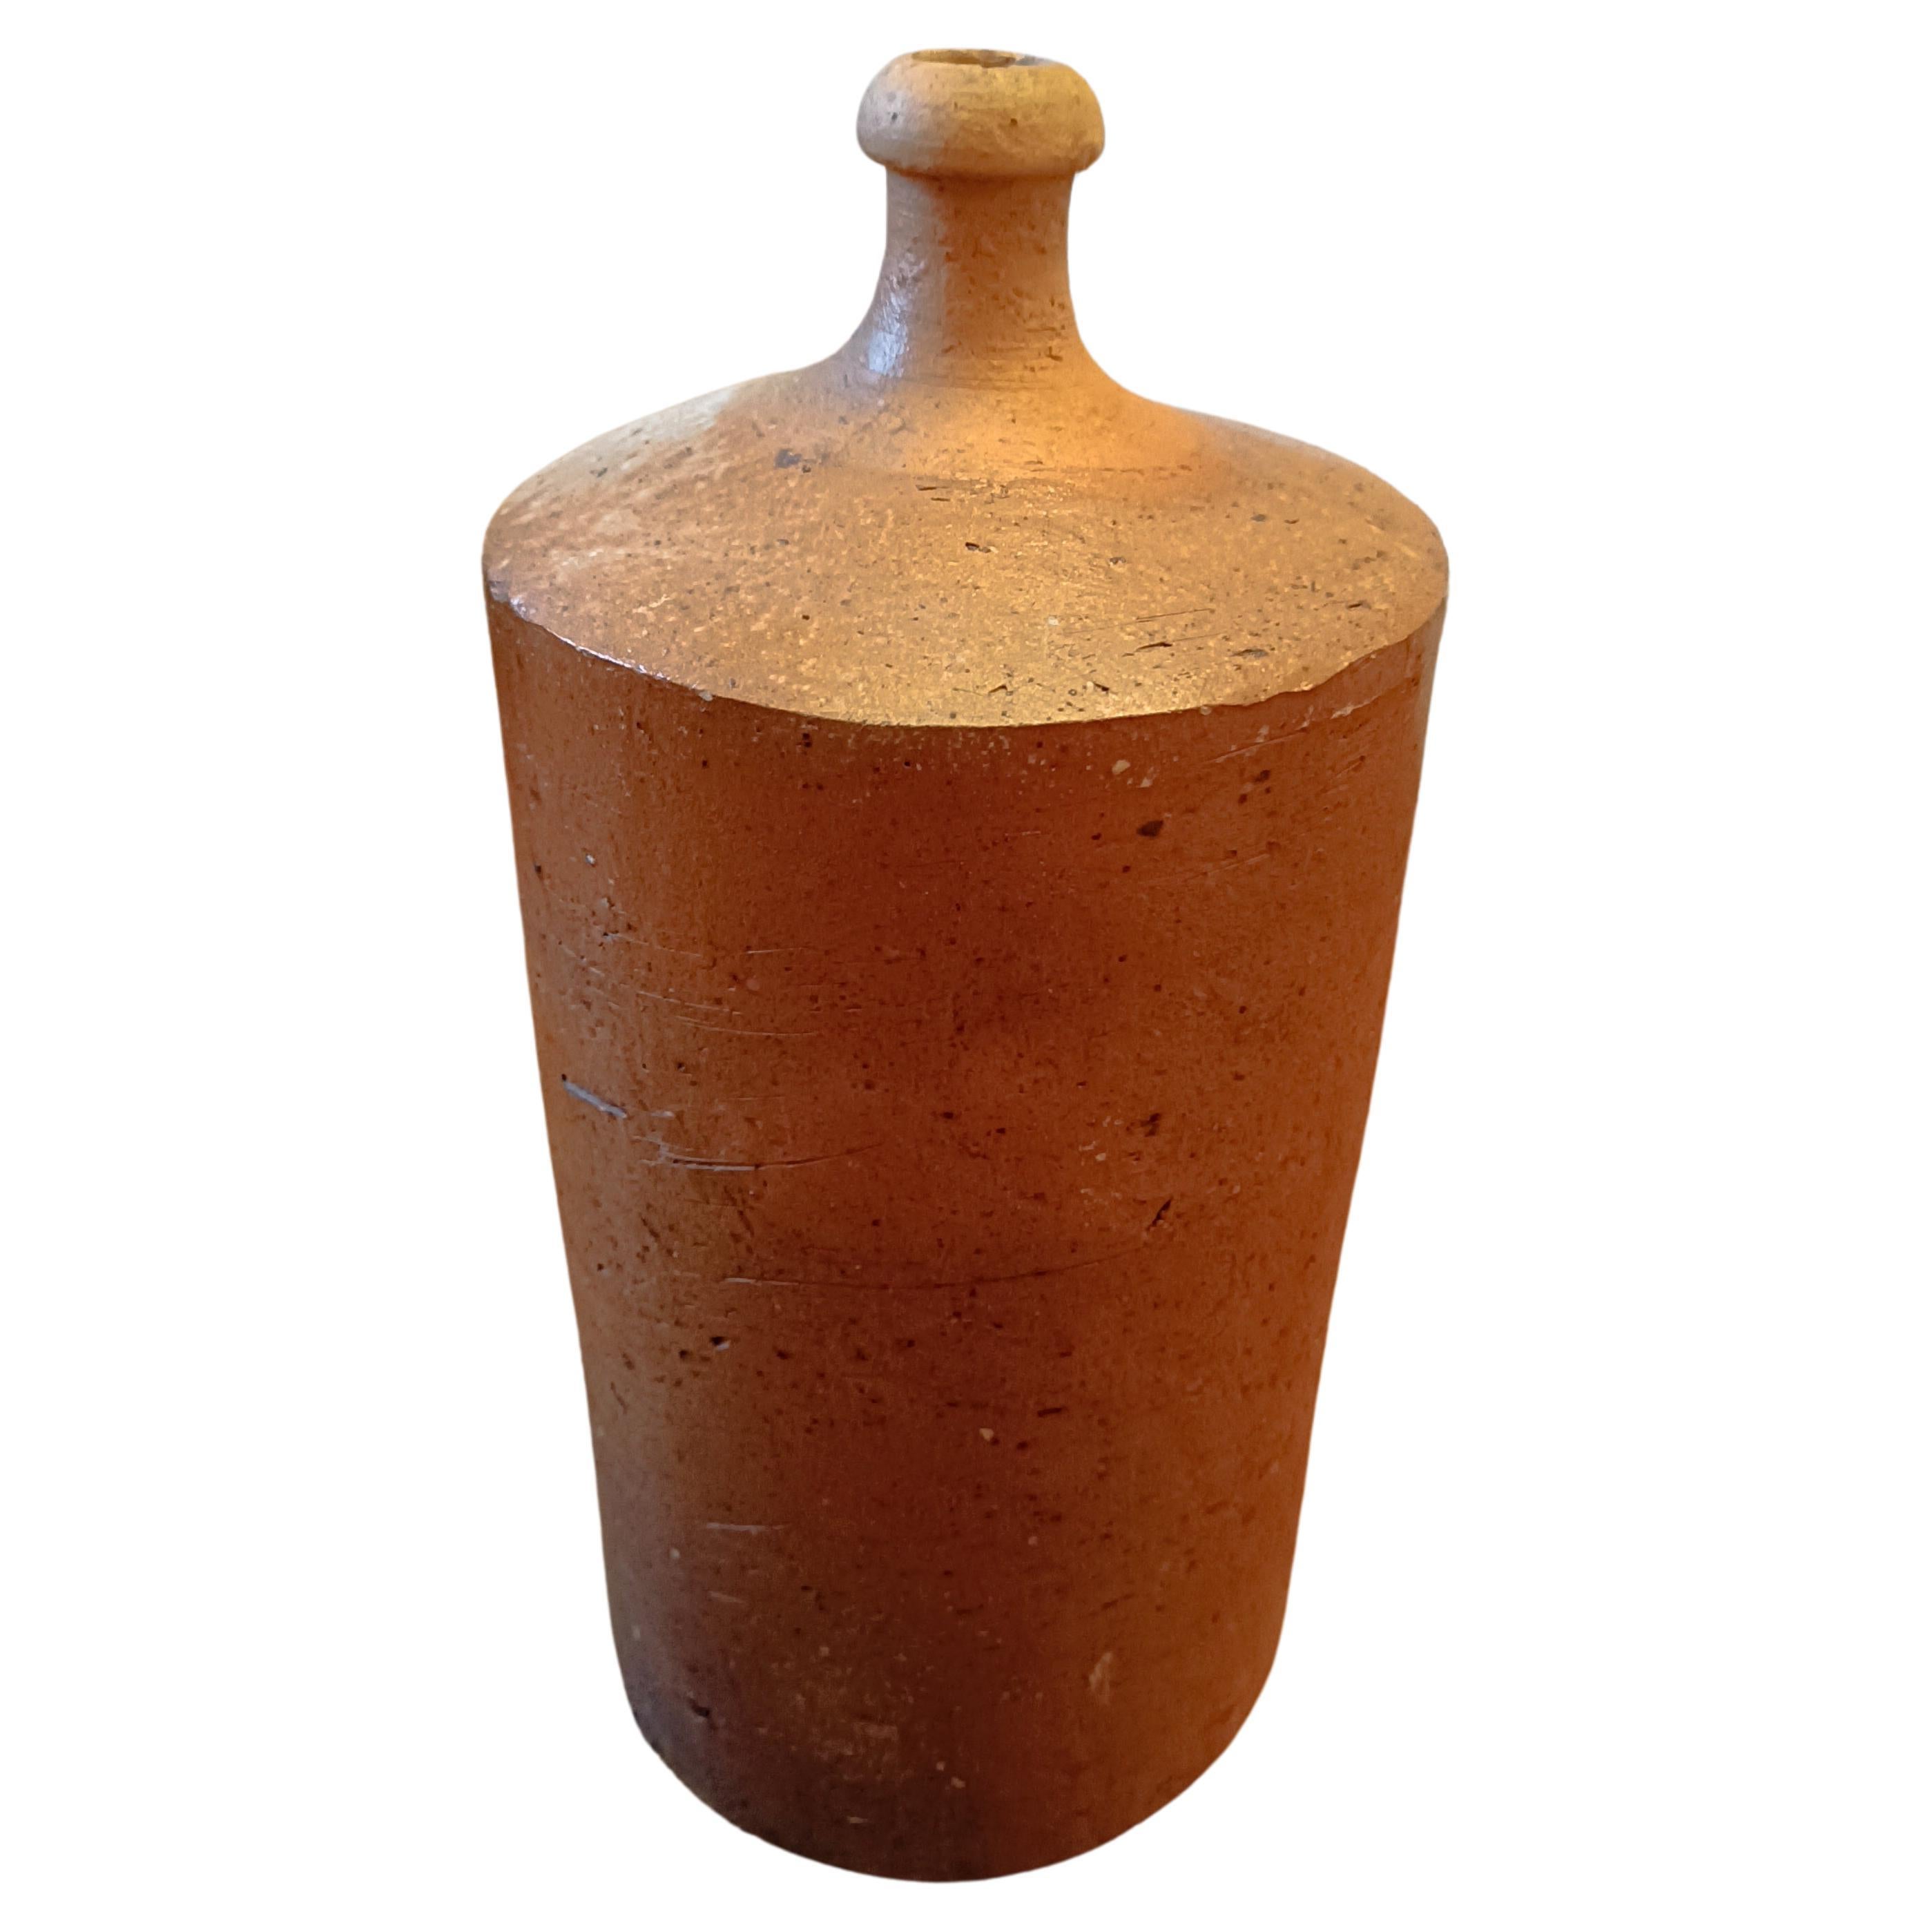 Massives französisches Steingutflasche aus Steingut, spätes 19. Jahrhundert – Terrakottaflasche

Hervorragende alte Terrakotta-Flasche.
Die runde Form und die raue Textur machen ihn zu einem schönen und originellen Stück.
Es ist in gutem